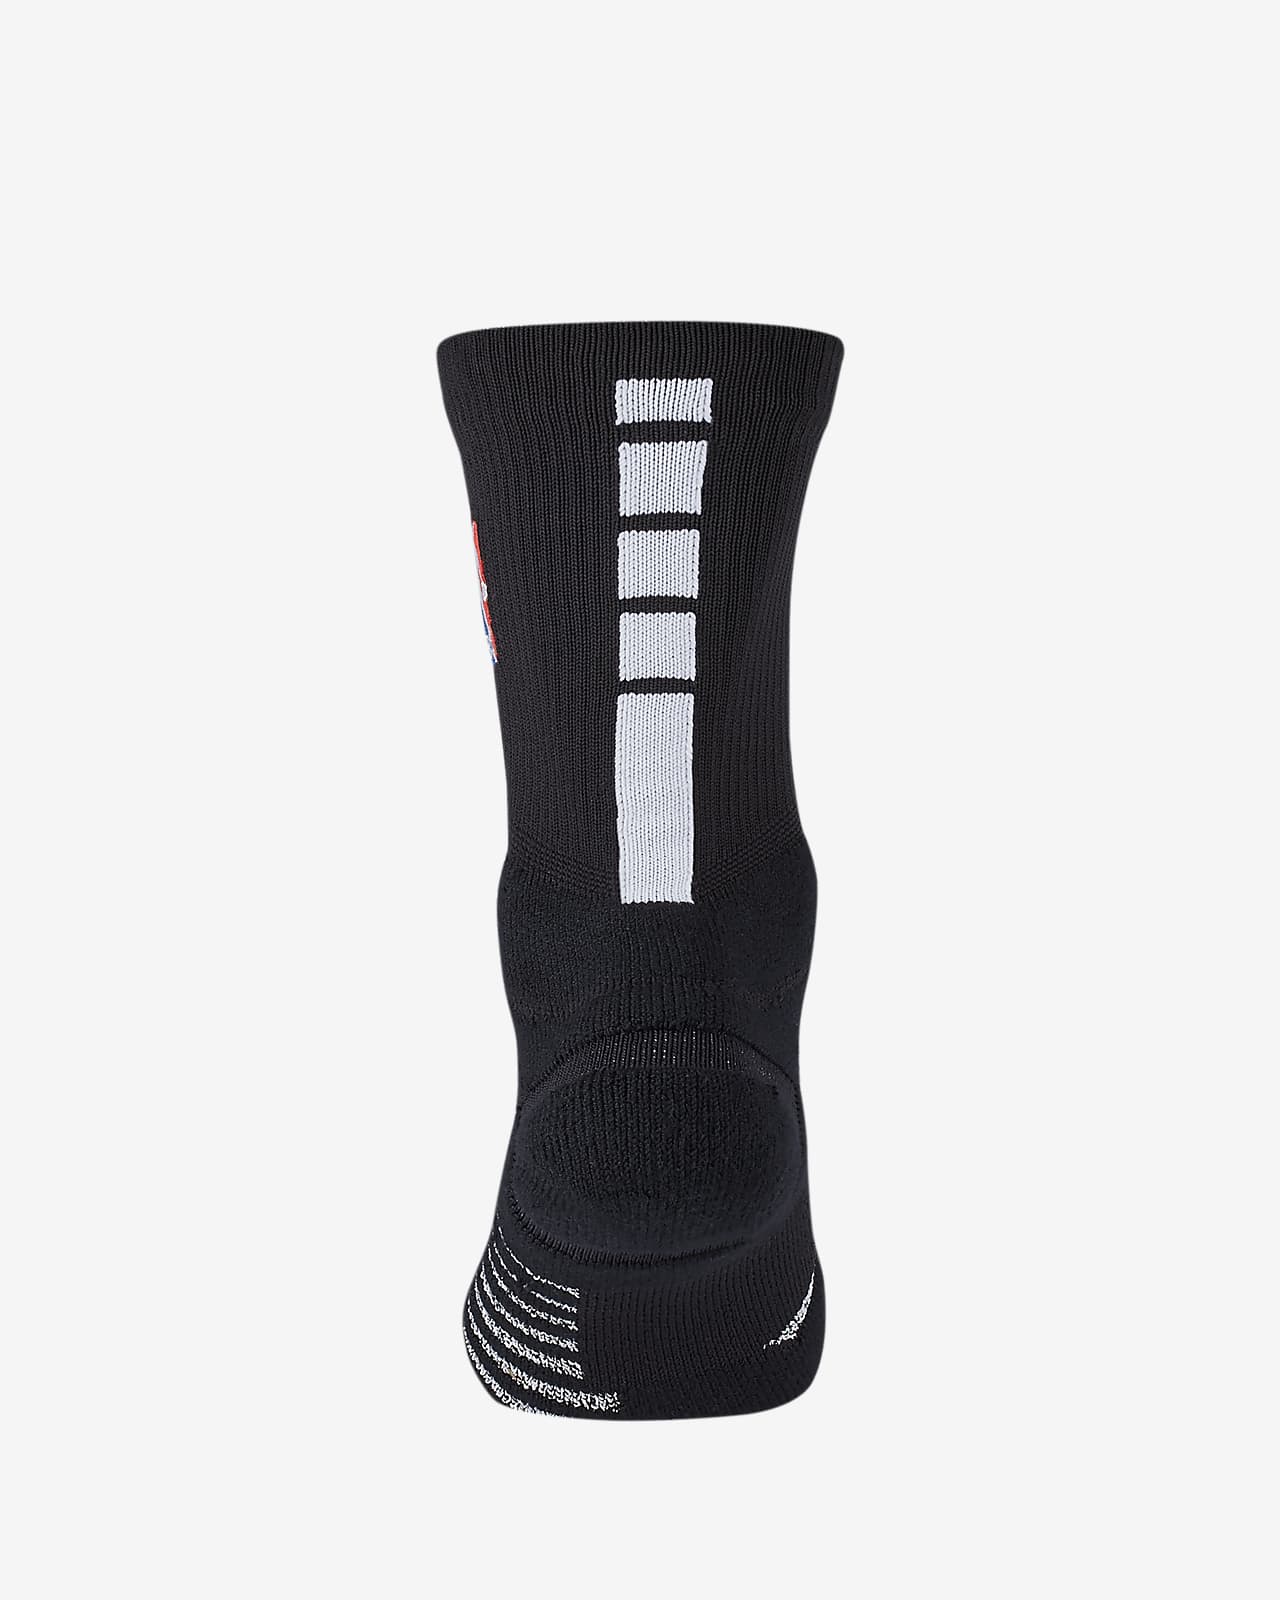 Nike Elite Power Grip Socks Top Sellers | bellvalefarms.com